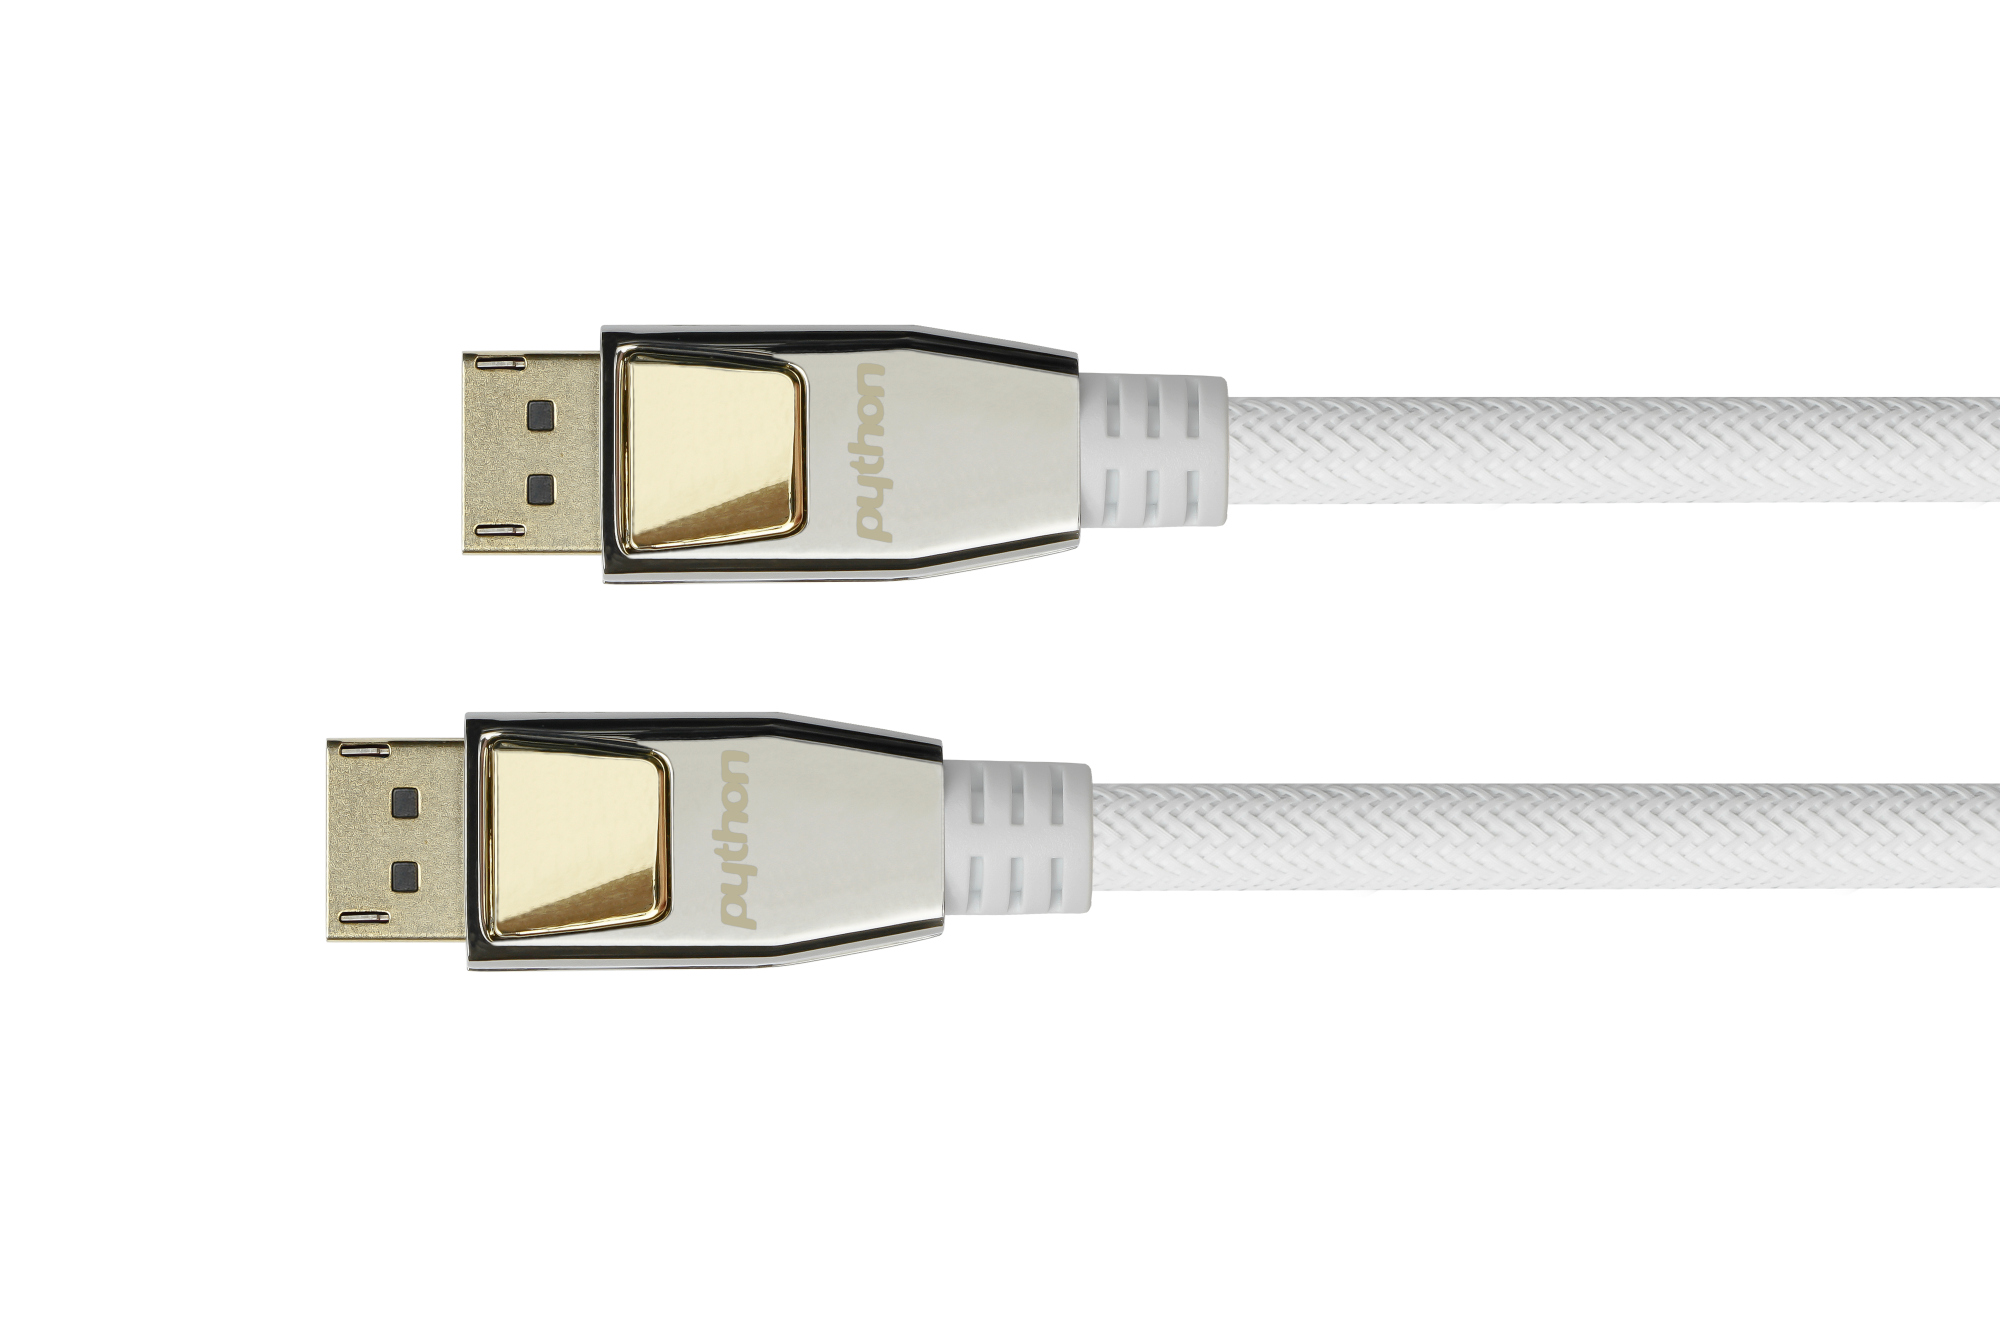 Anschlusskabel DisplayPort 1.2, 4K / UHD @60Hz, Vollmetallstecker, OFC, Nylongeflecht weiß, 10m